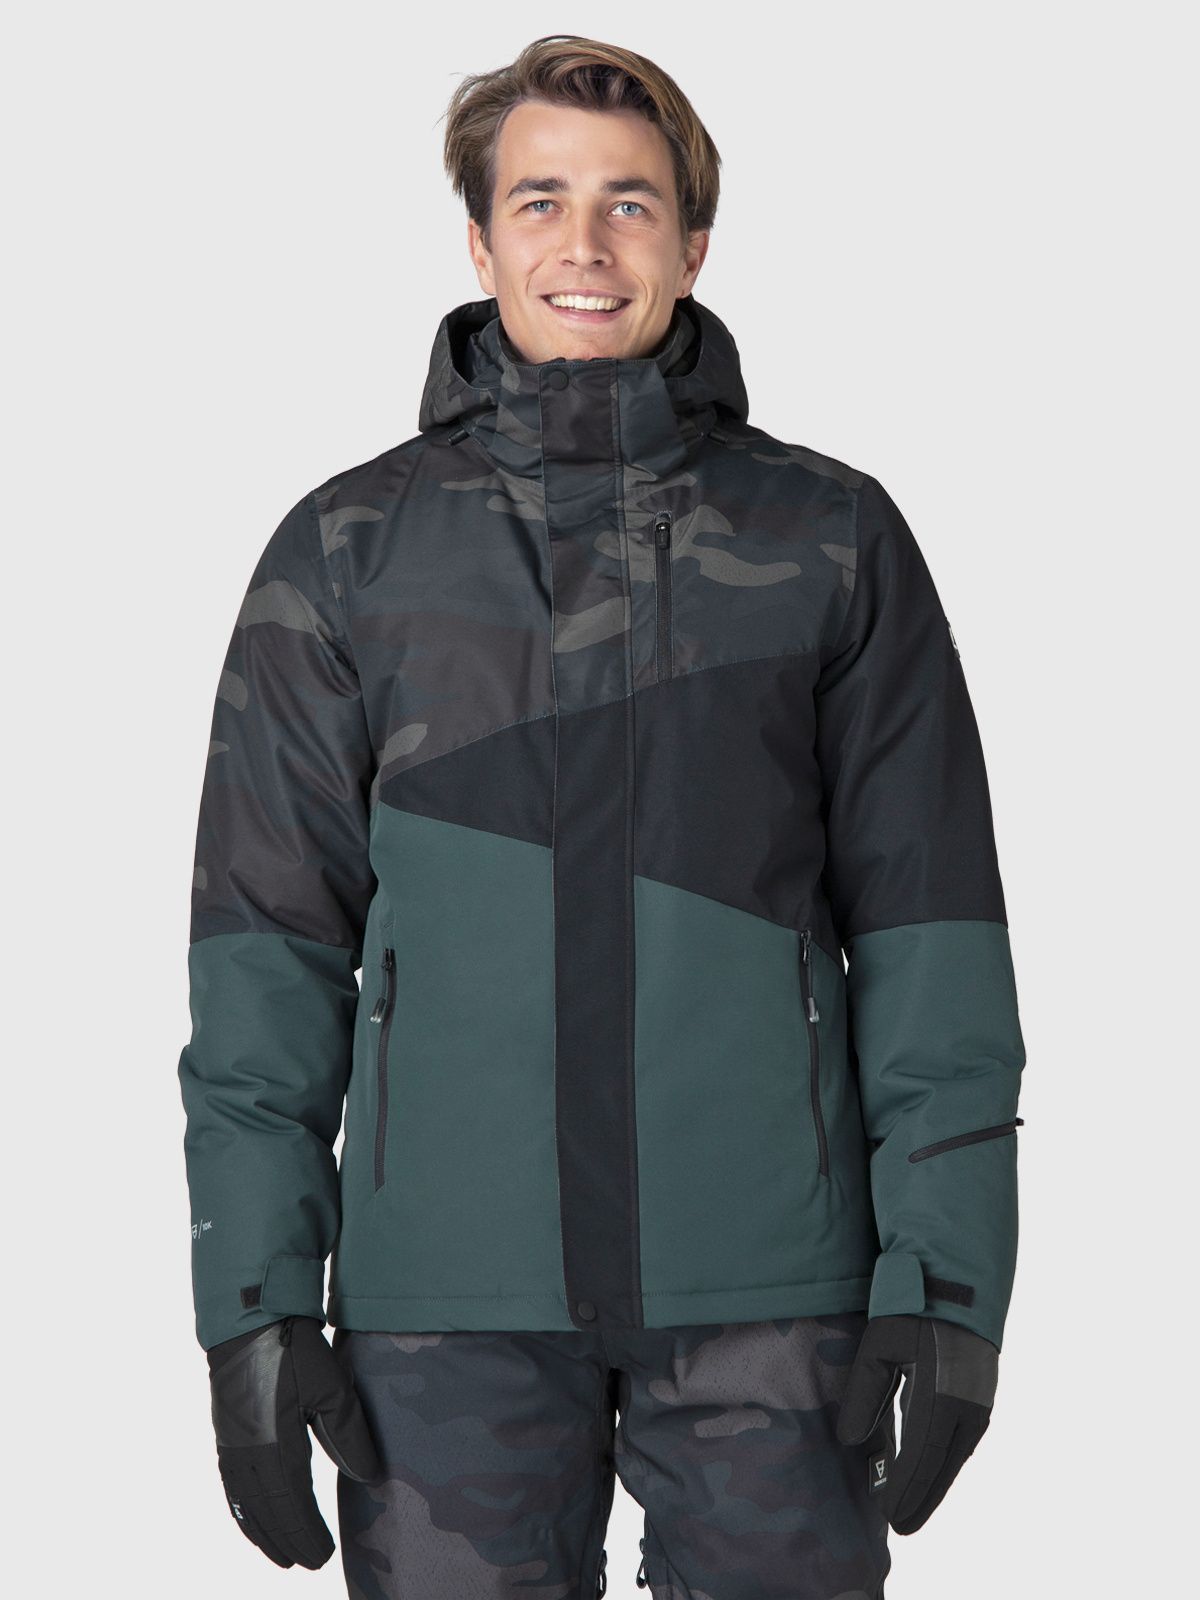 Inwoner Gezamenlijke selectie Leidingen Brunotti heren Ski jas Idaho online kopen?